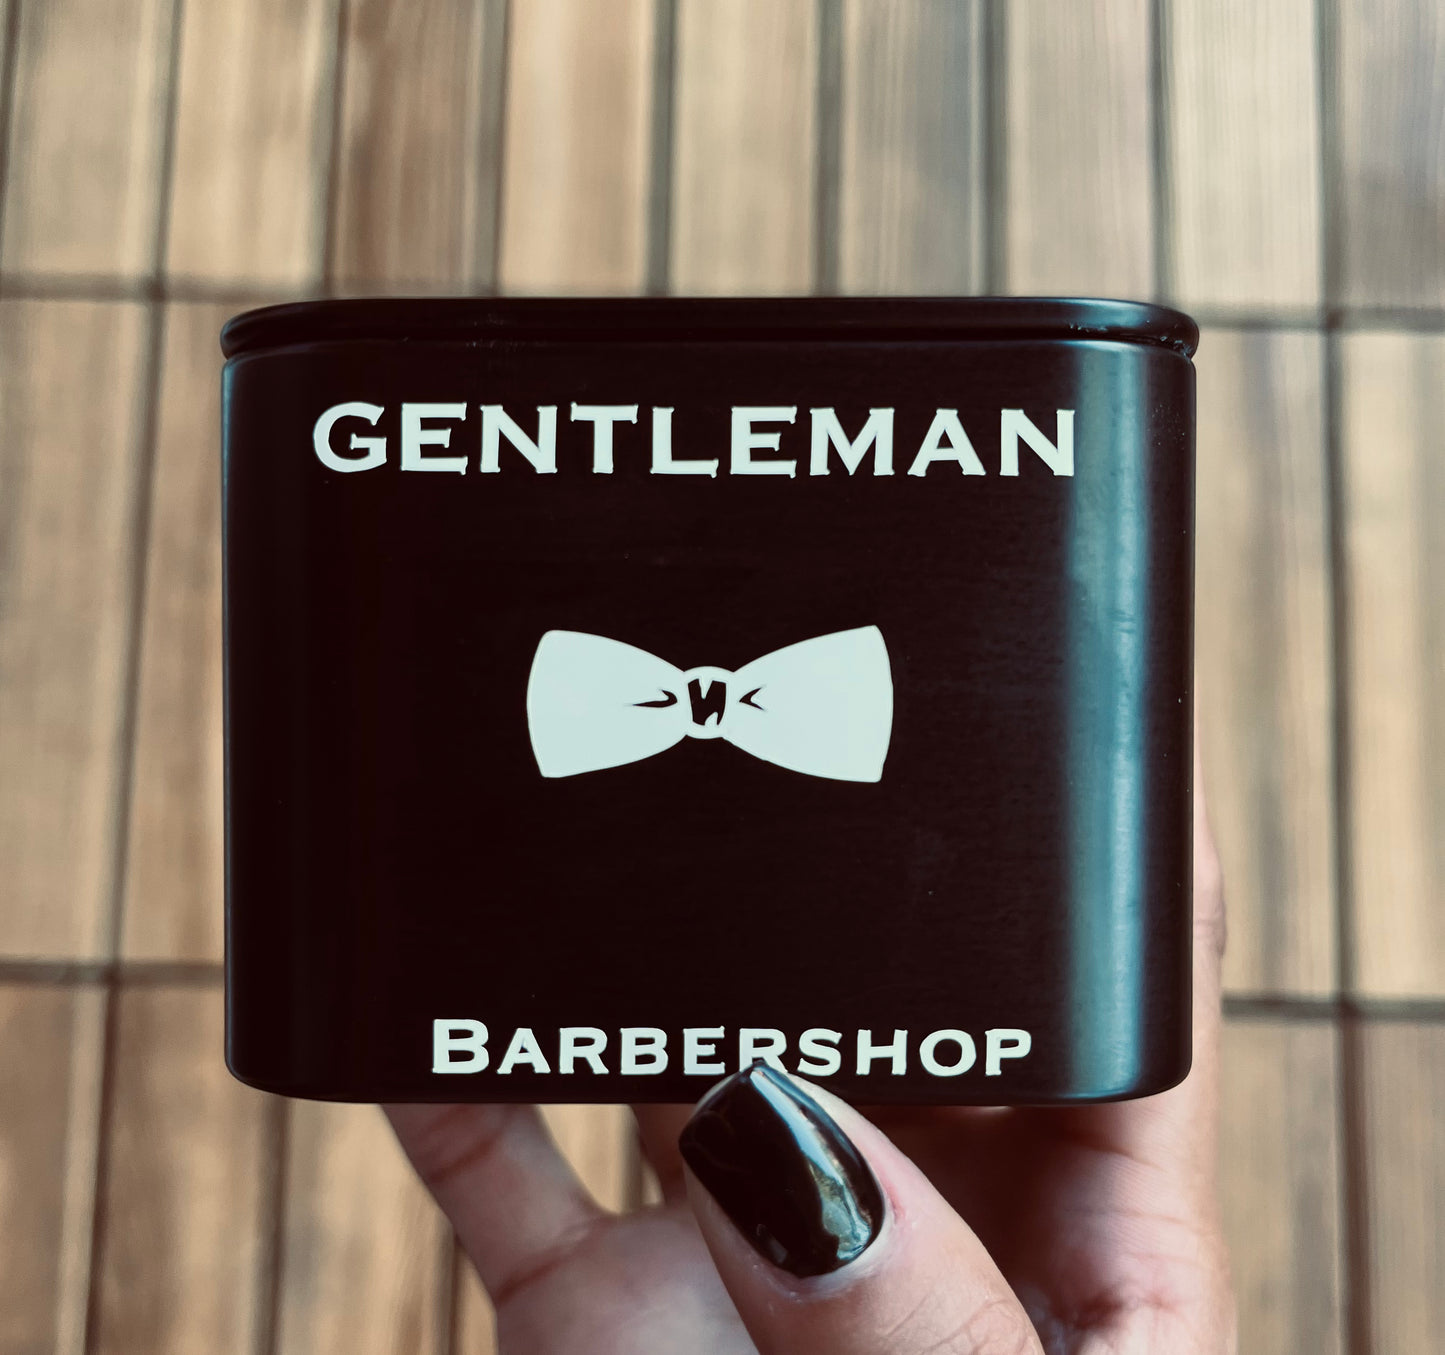 Gentlemen's Candle Set